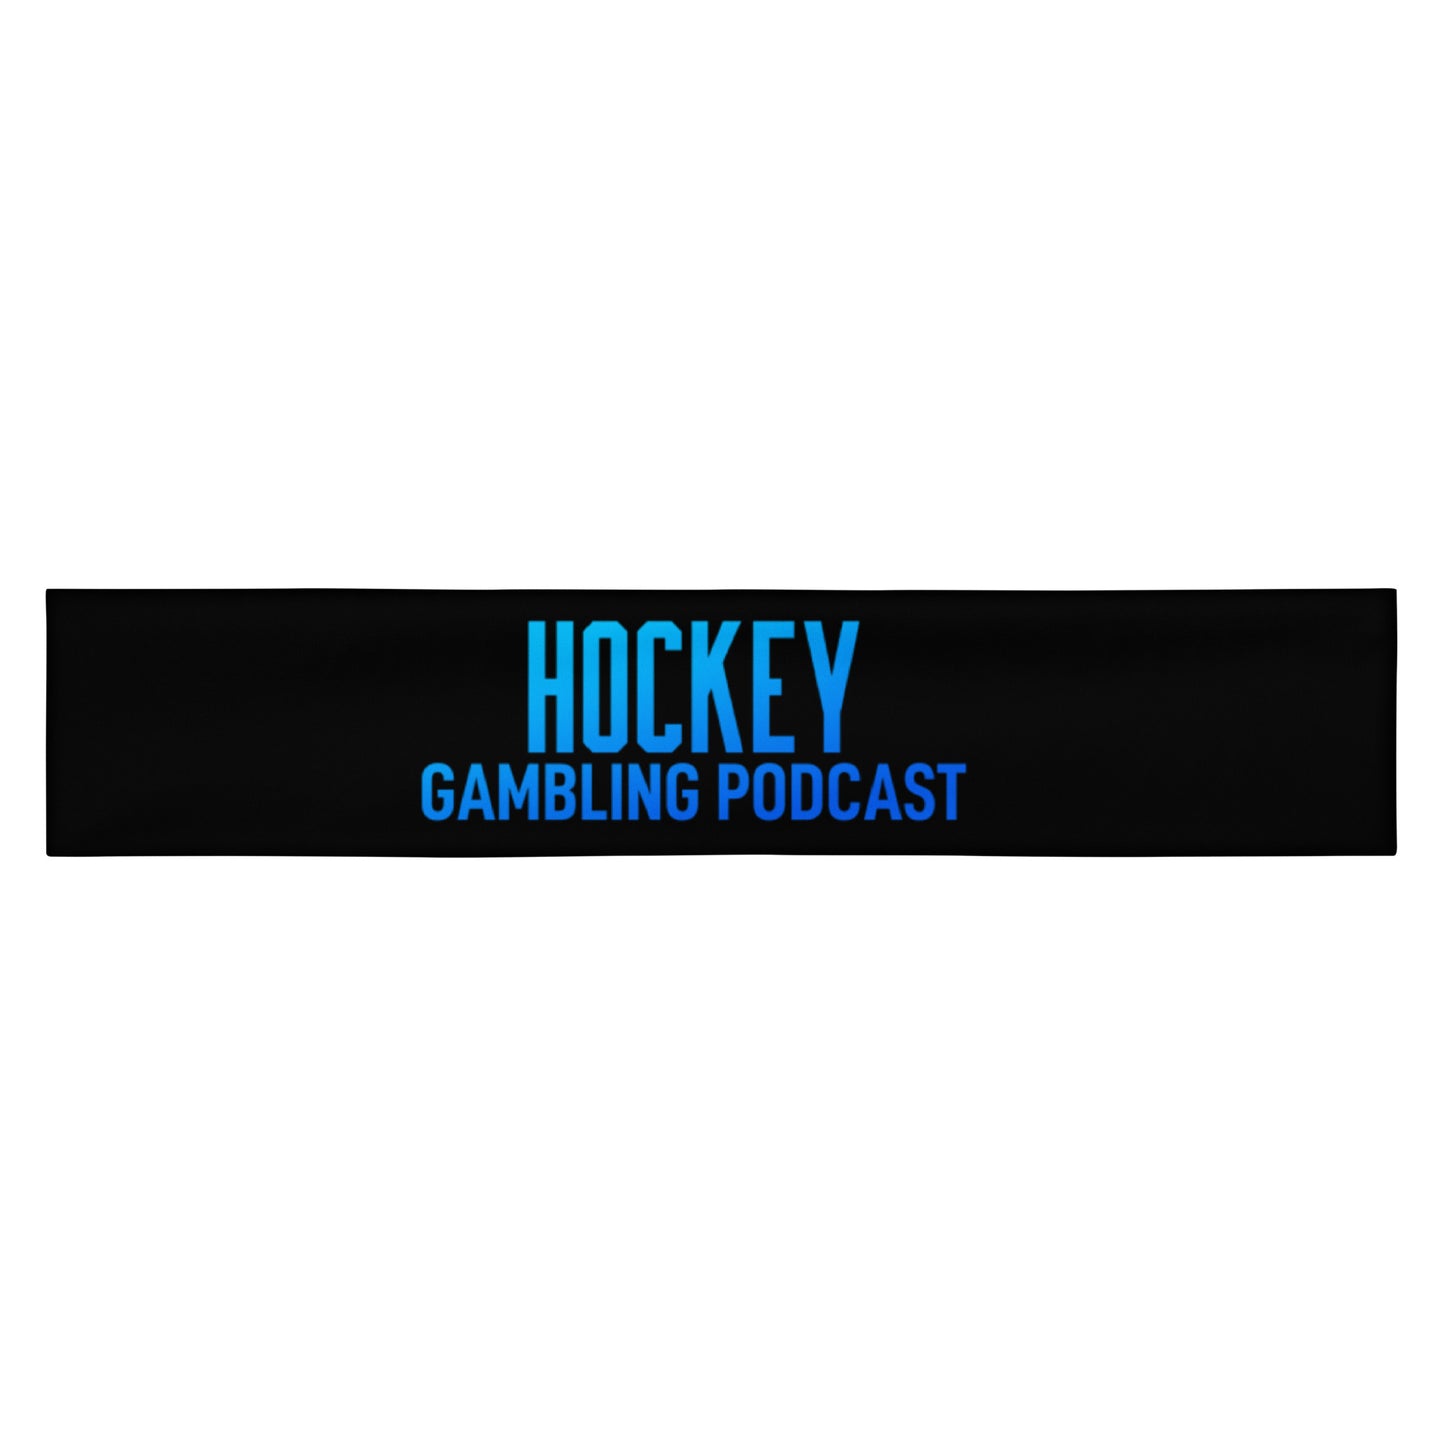 Hockey Gambling Podcast - Headband